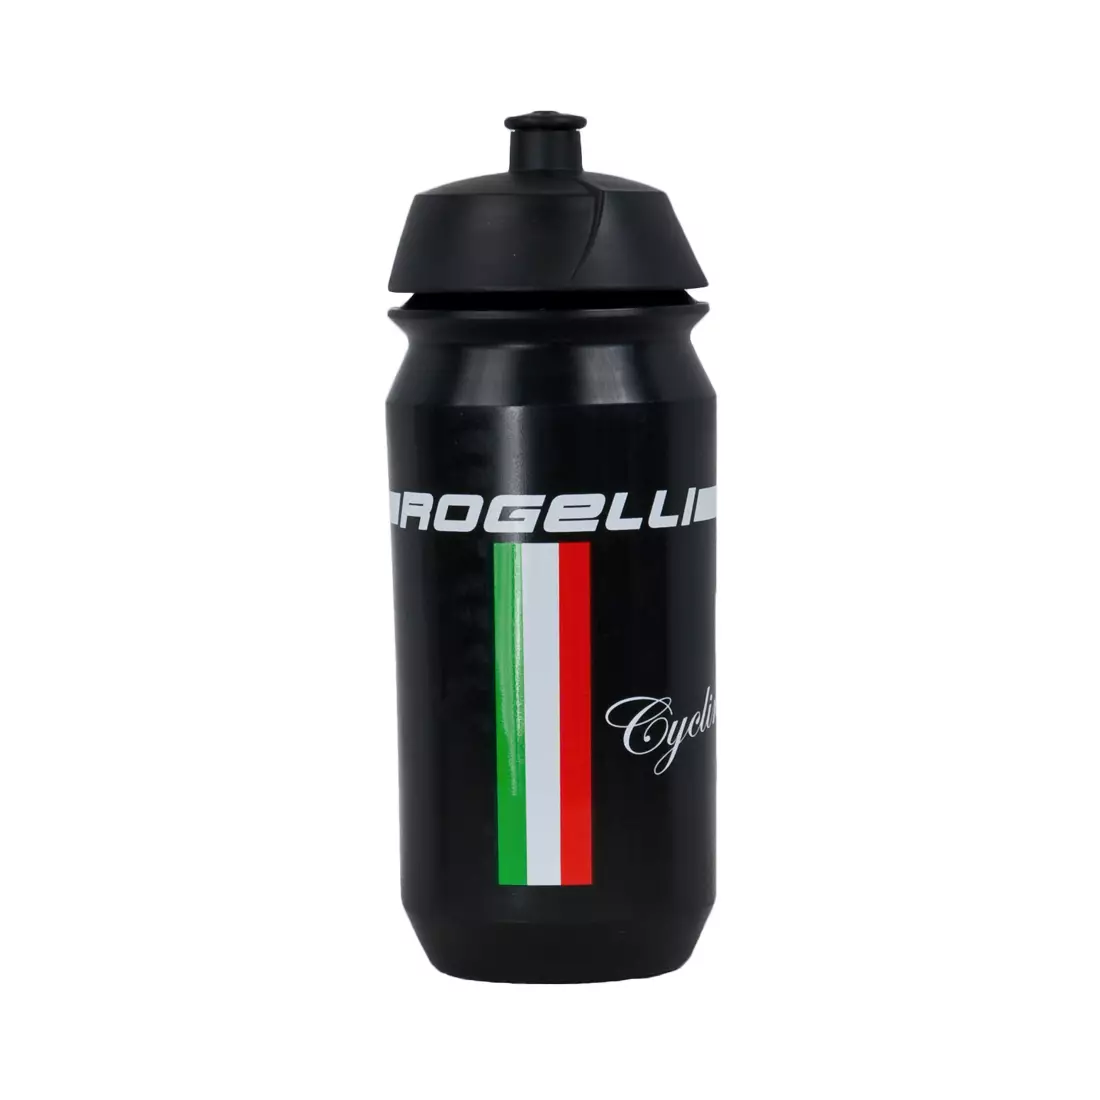 ROGELLI ss18 BIKE - TEAM - cyklistická fľaša na vodu, farba: Čierna